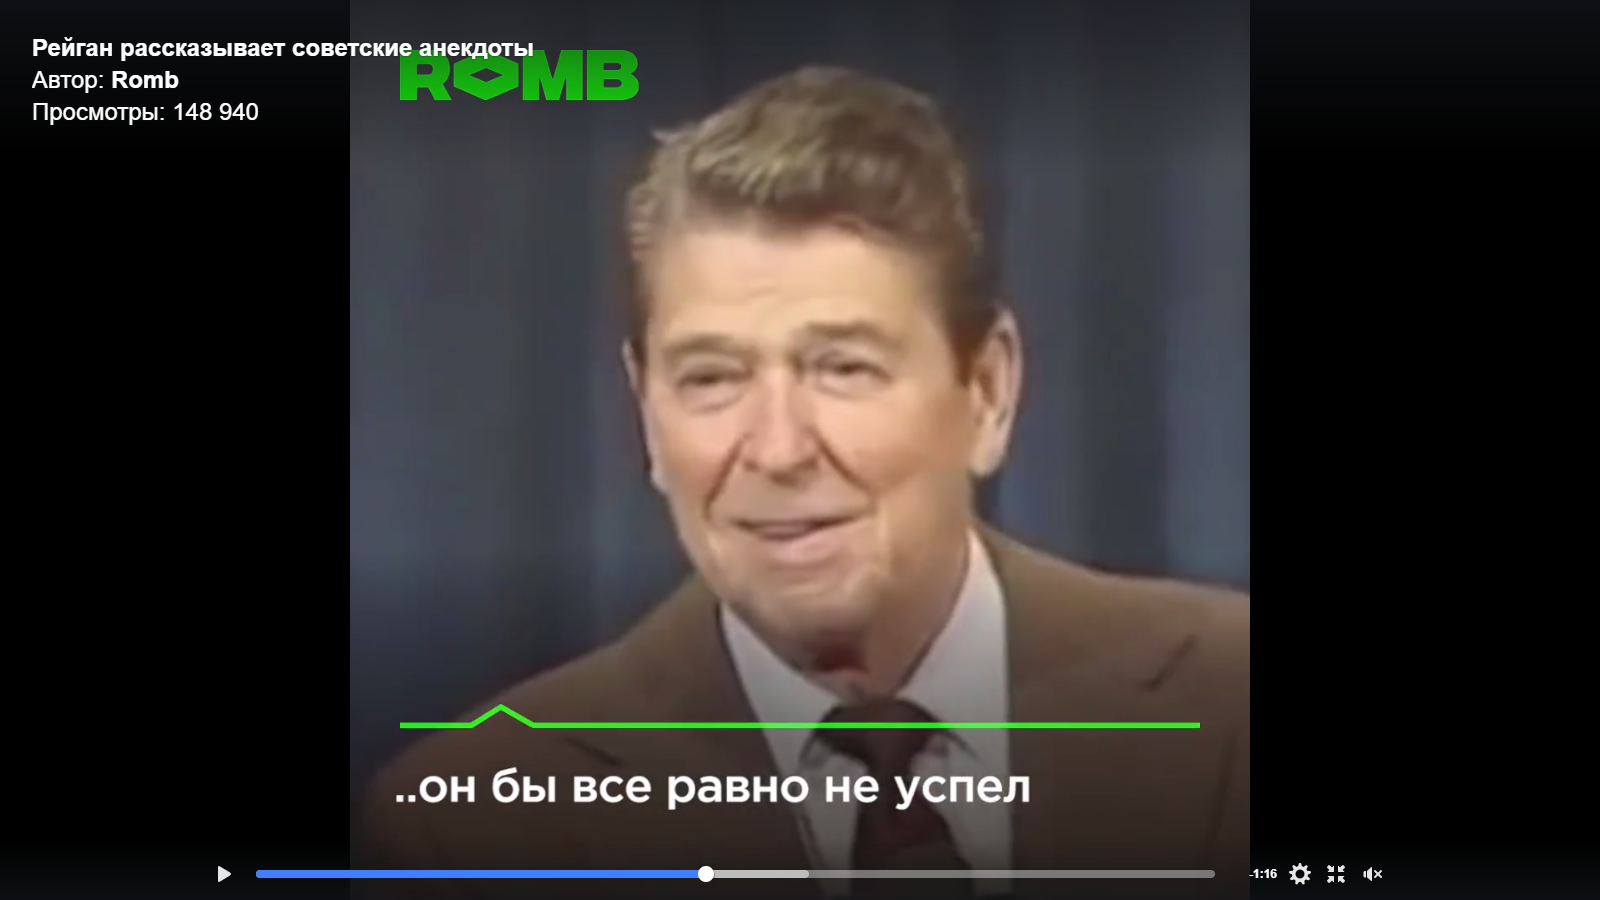 Видео дня: Рональд Рейган рассказывает советские анекдоты